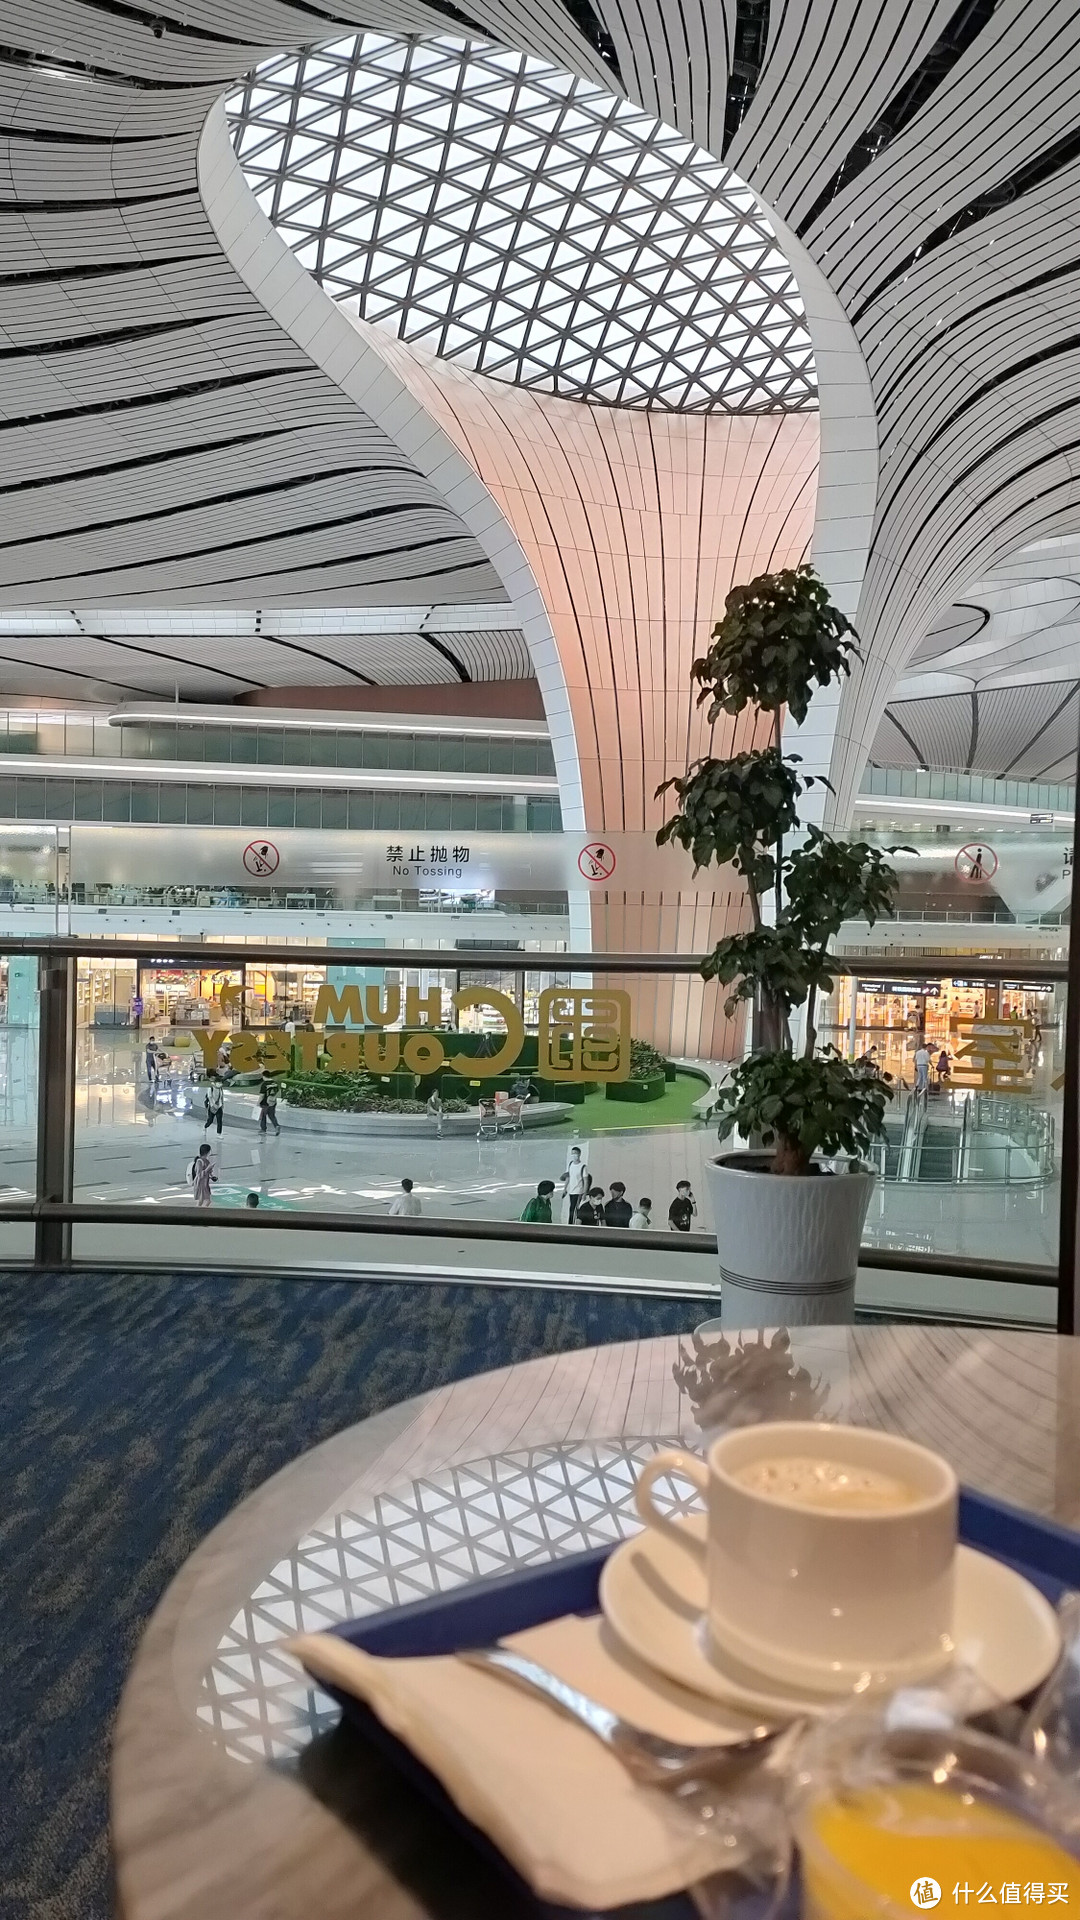 对比之下,北京大兴机场的贵宾厅是真的大,饮料小食种类也多,最重要的